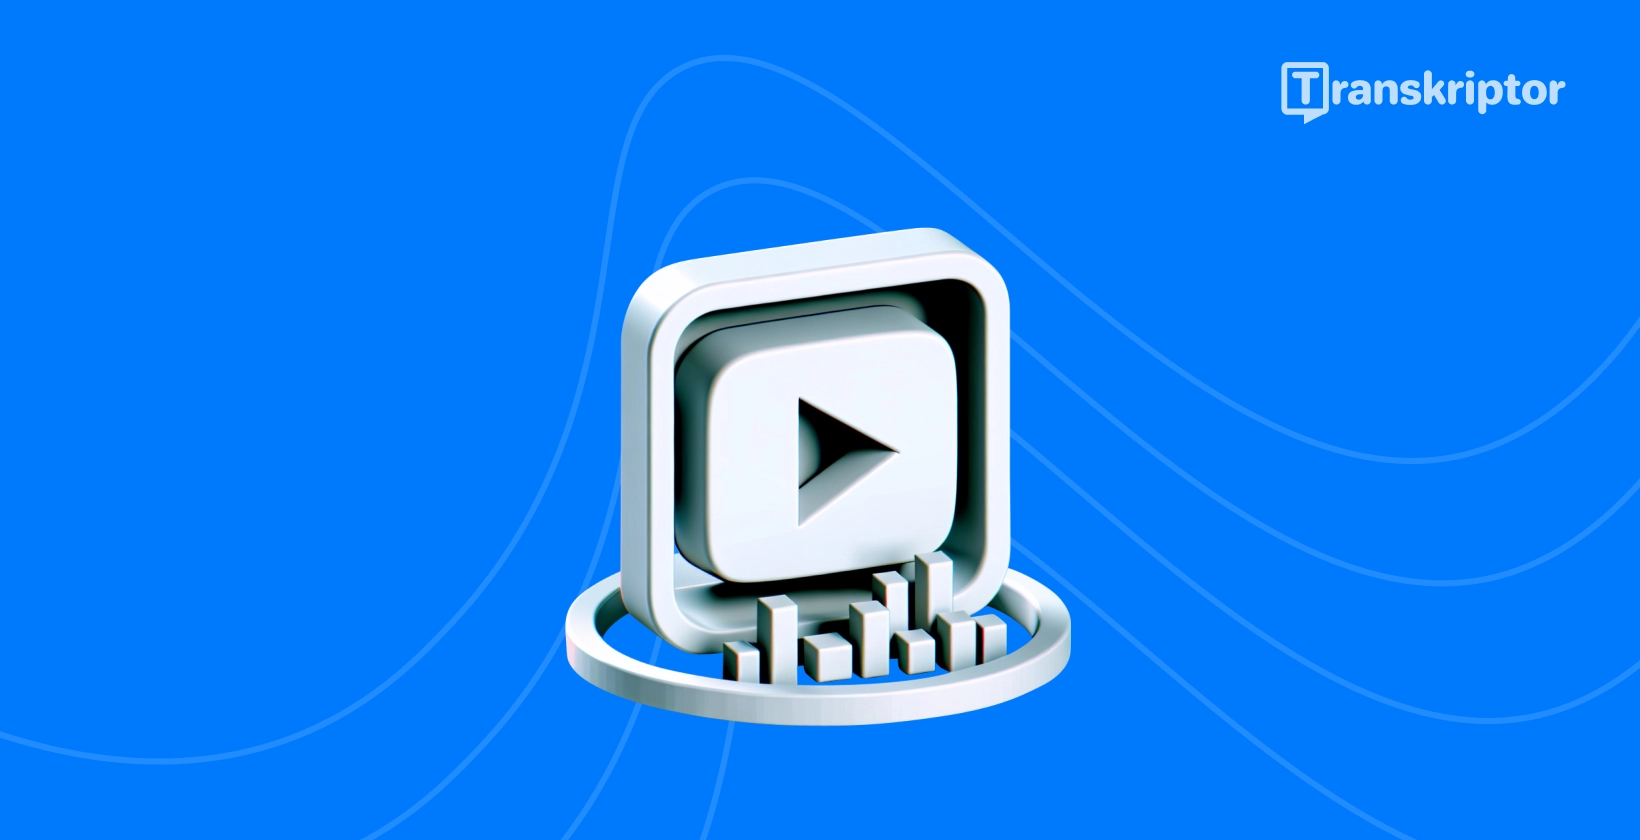 Avspillingsknapp og transkripsjon visuell illustrerende metoder for å transkribere videoene YouTube effektivt.